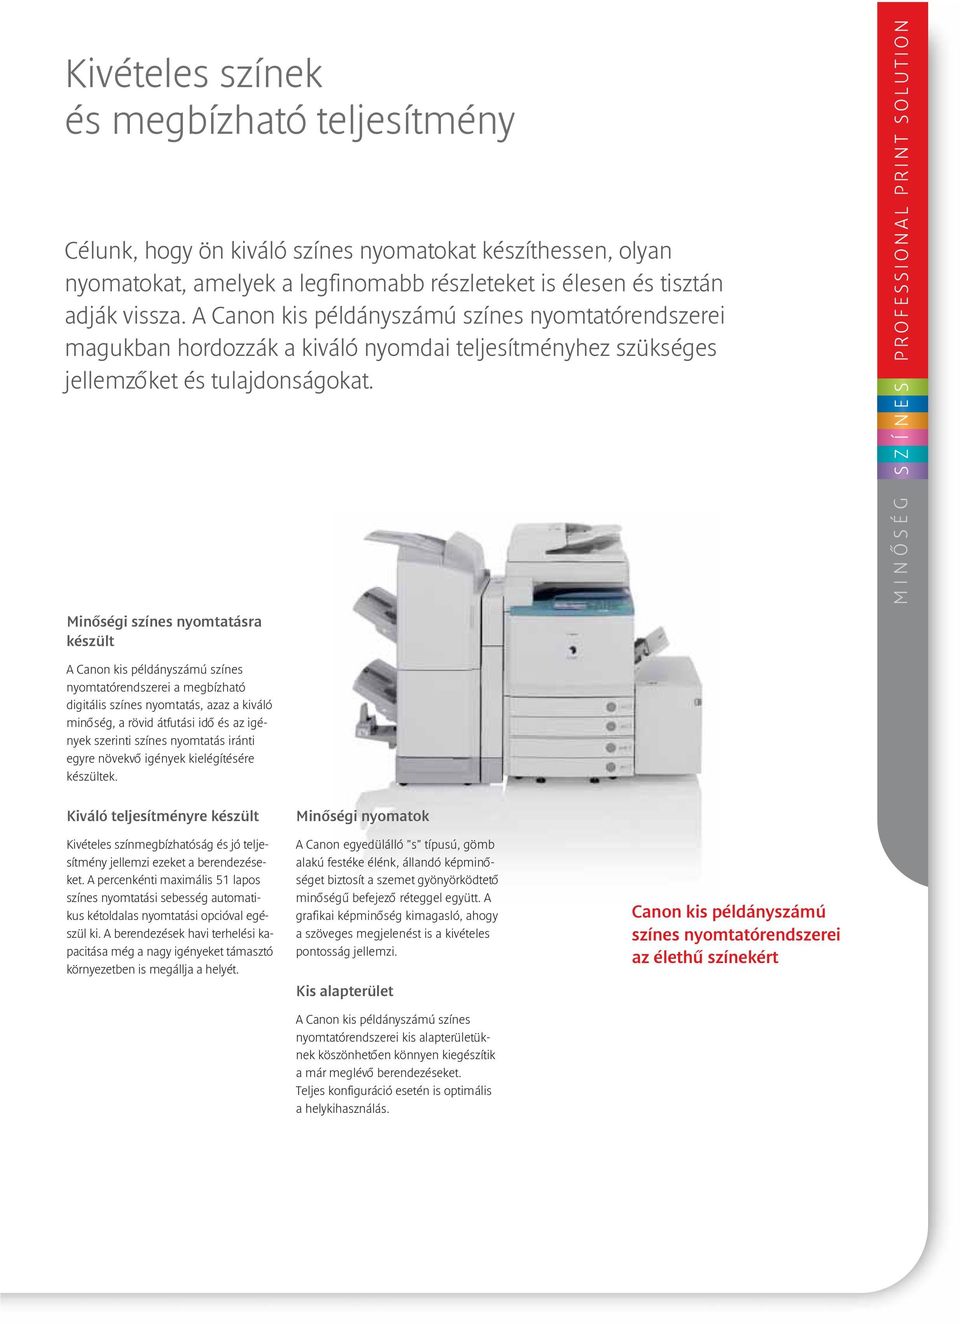 PROFESSIONAL PRINT SOLUTION S MINÔSÉG S Z Í N E Minôségi színes nyomtatásra készült A Canon kis példányszámú színes nyomtatórendszerei a megbízható digitális színes nyomtatás, azaz a kiváló minôség,